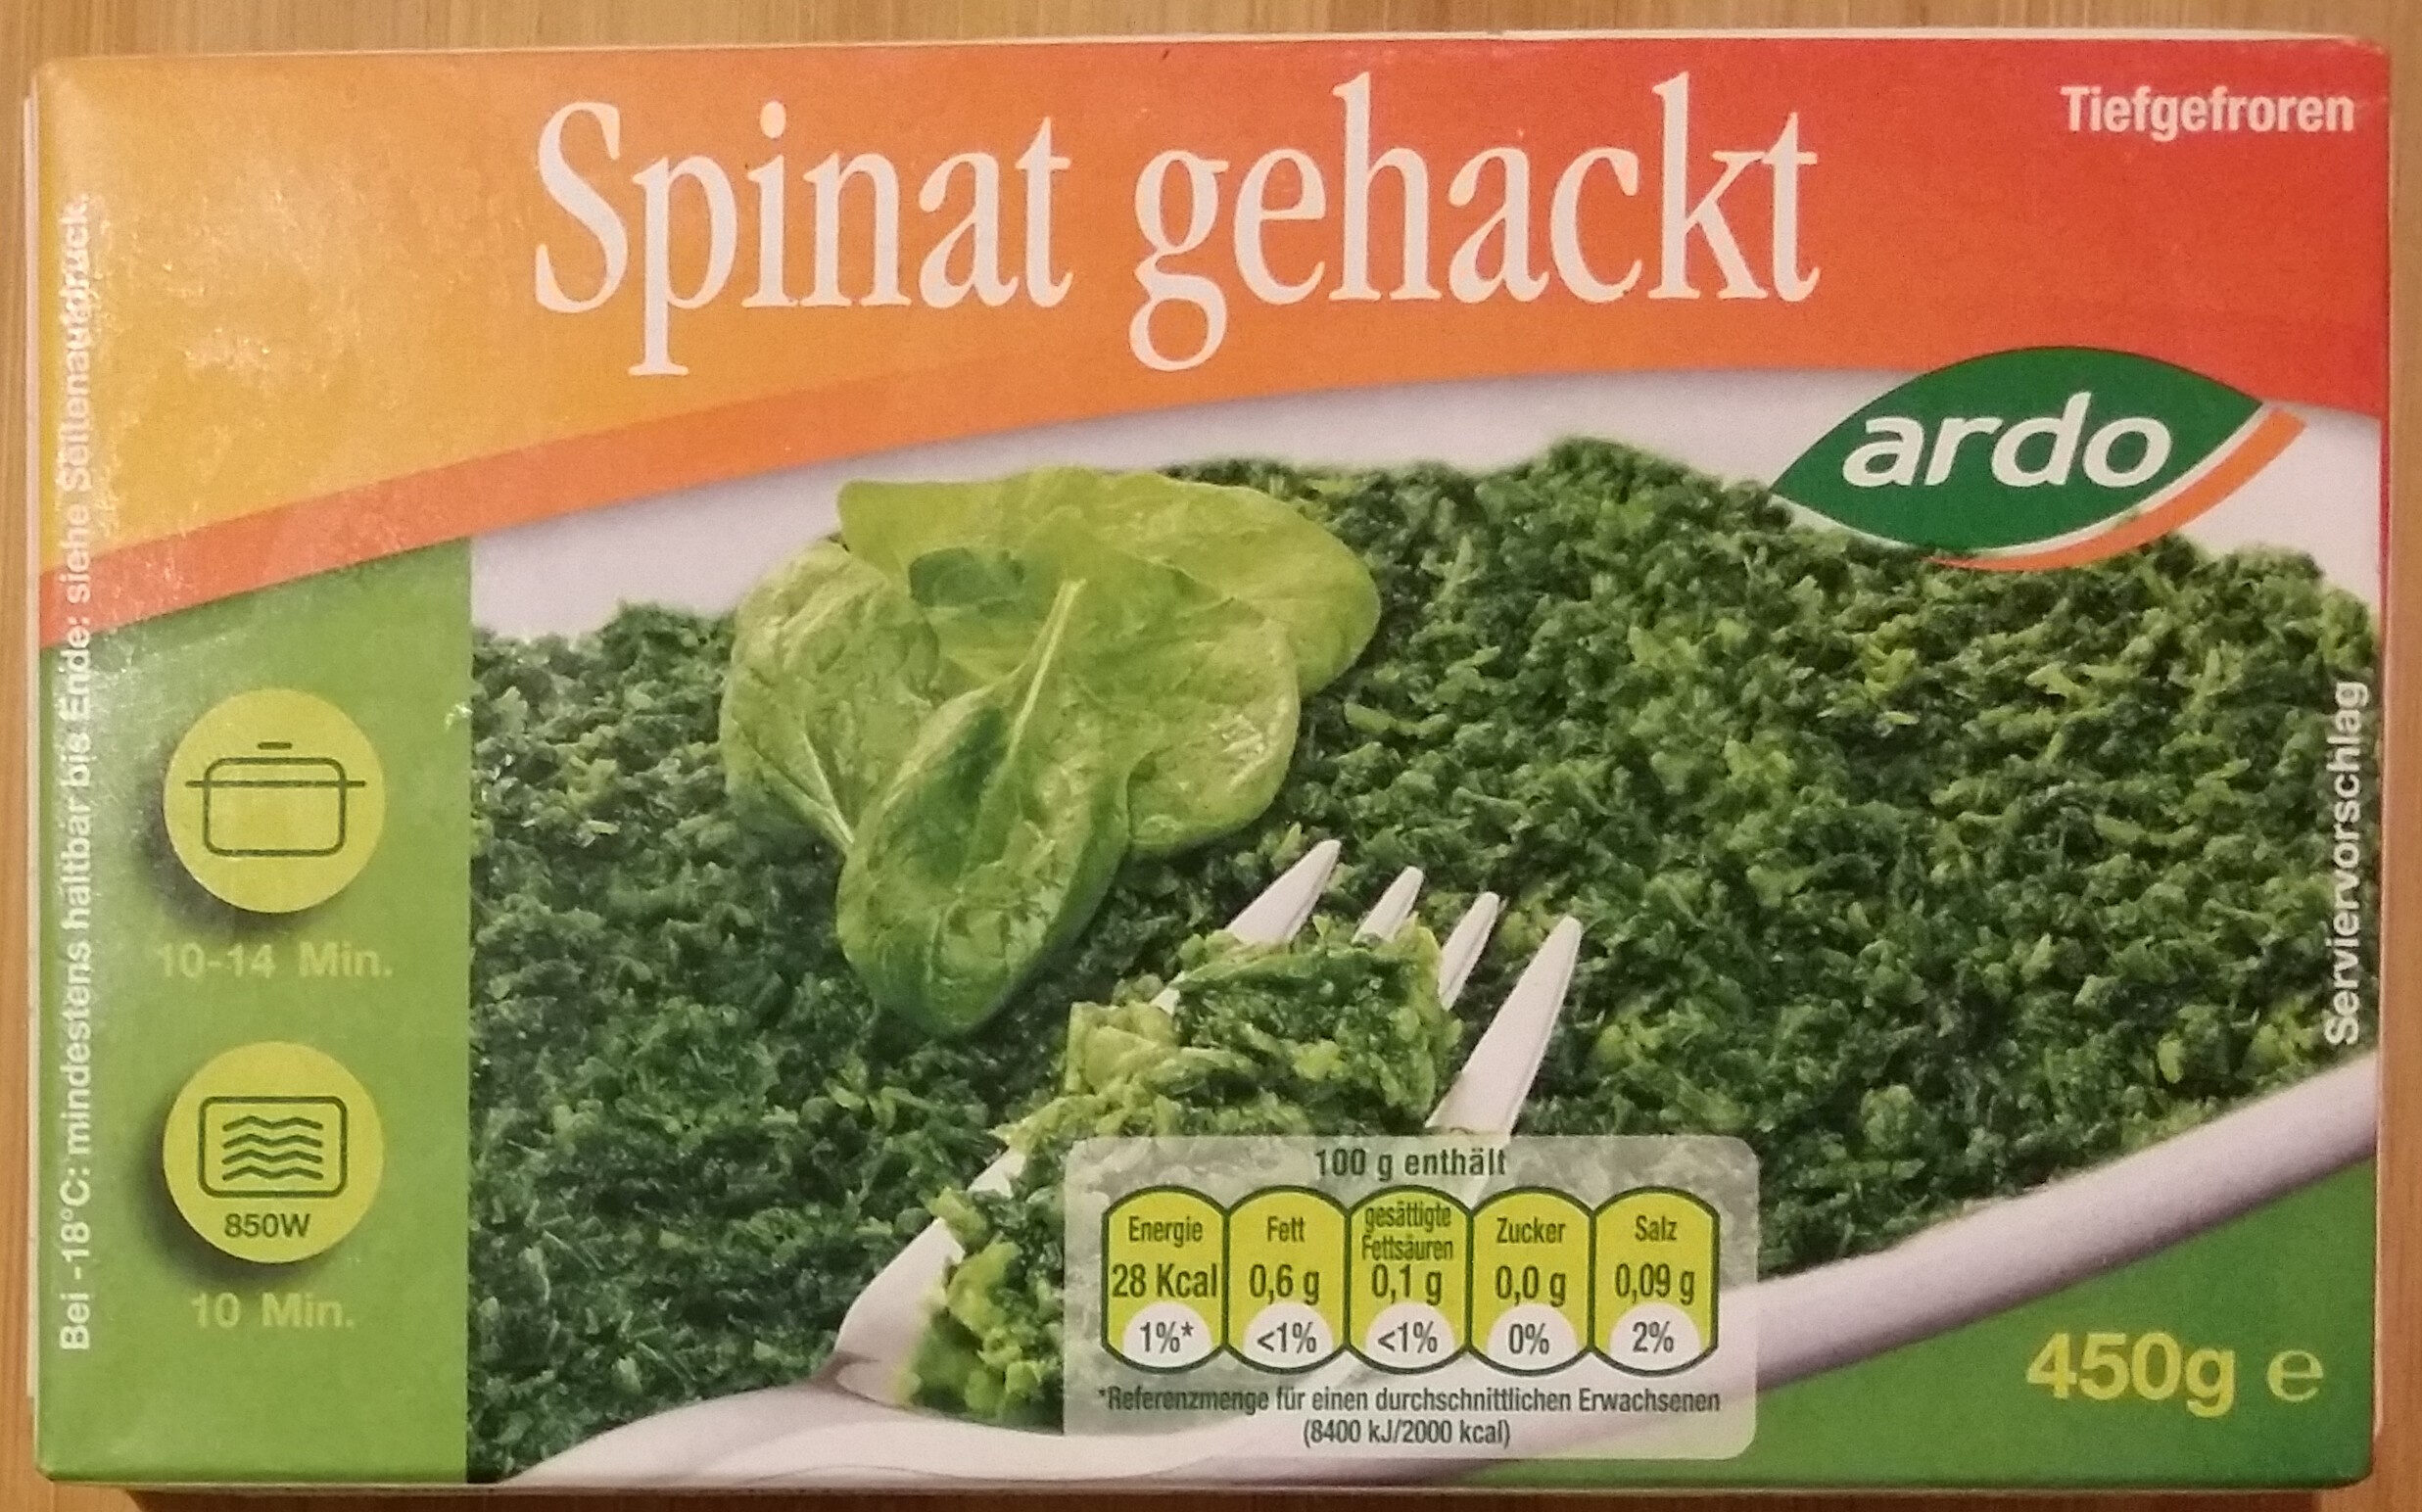 Spinat gehackt - Produkt